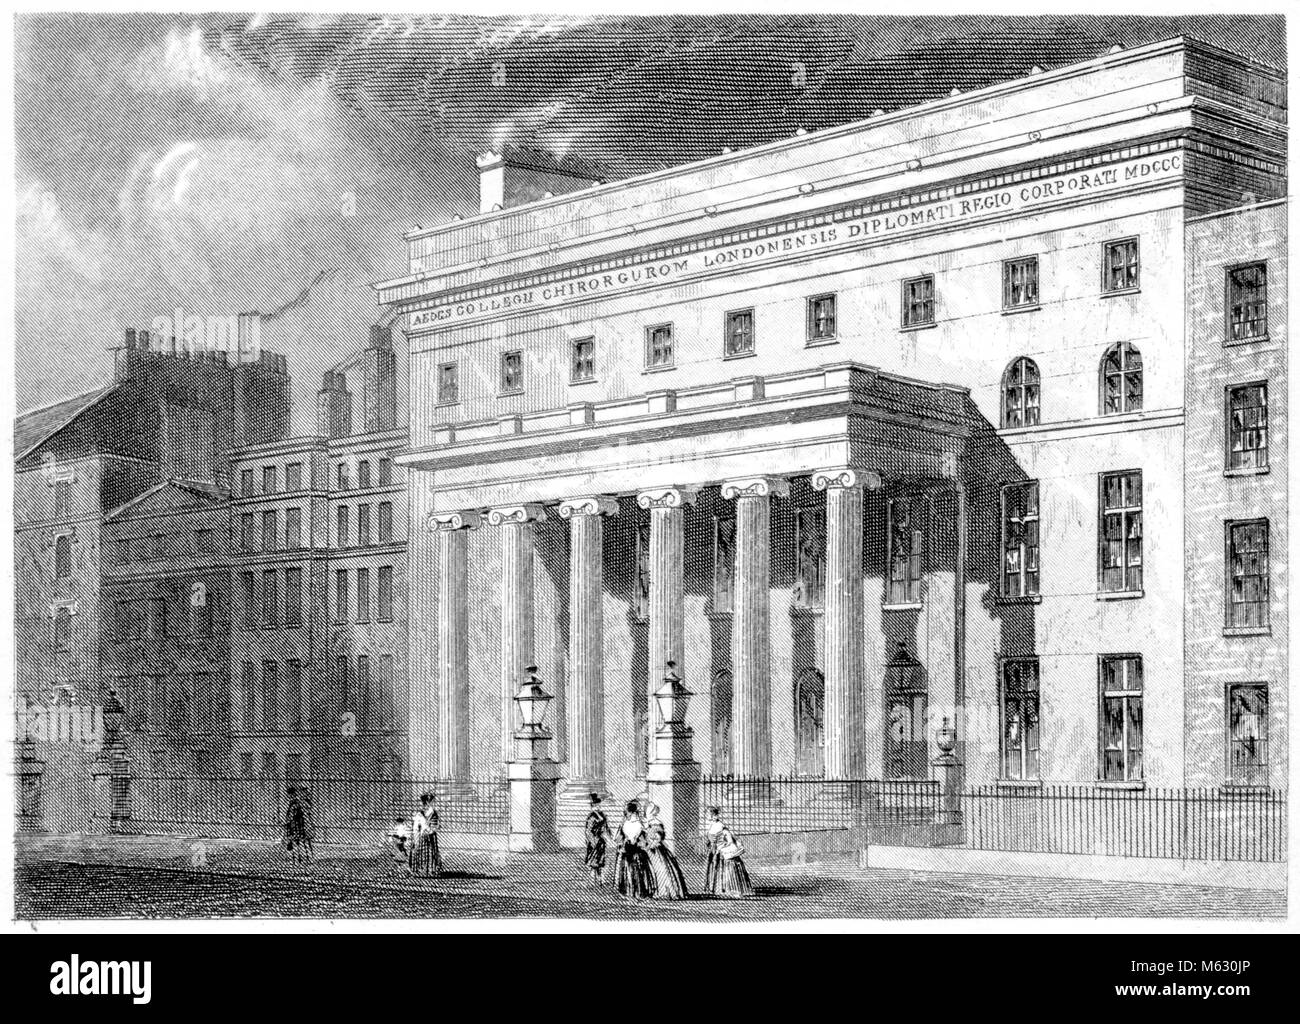 Eine Gravur der königlichen Hochschule der Chirurgen, London gescannt und in hoher Auflösung aus einem Buch im Jahre 1851 gedruckt. Glaubten copyright frei. Stockfoto